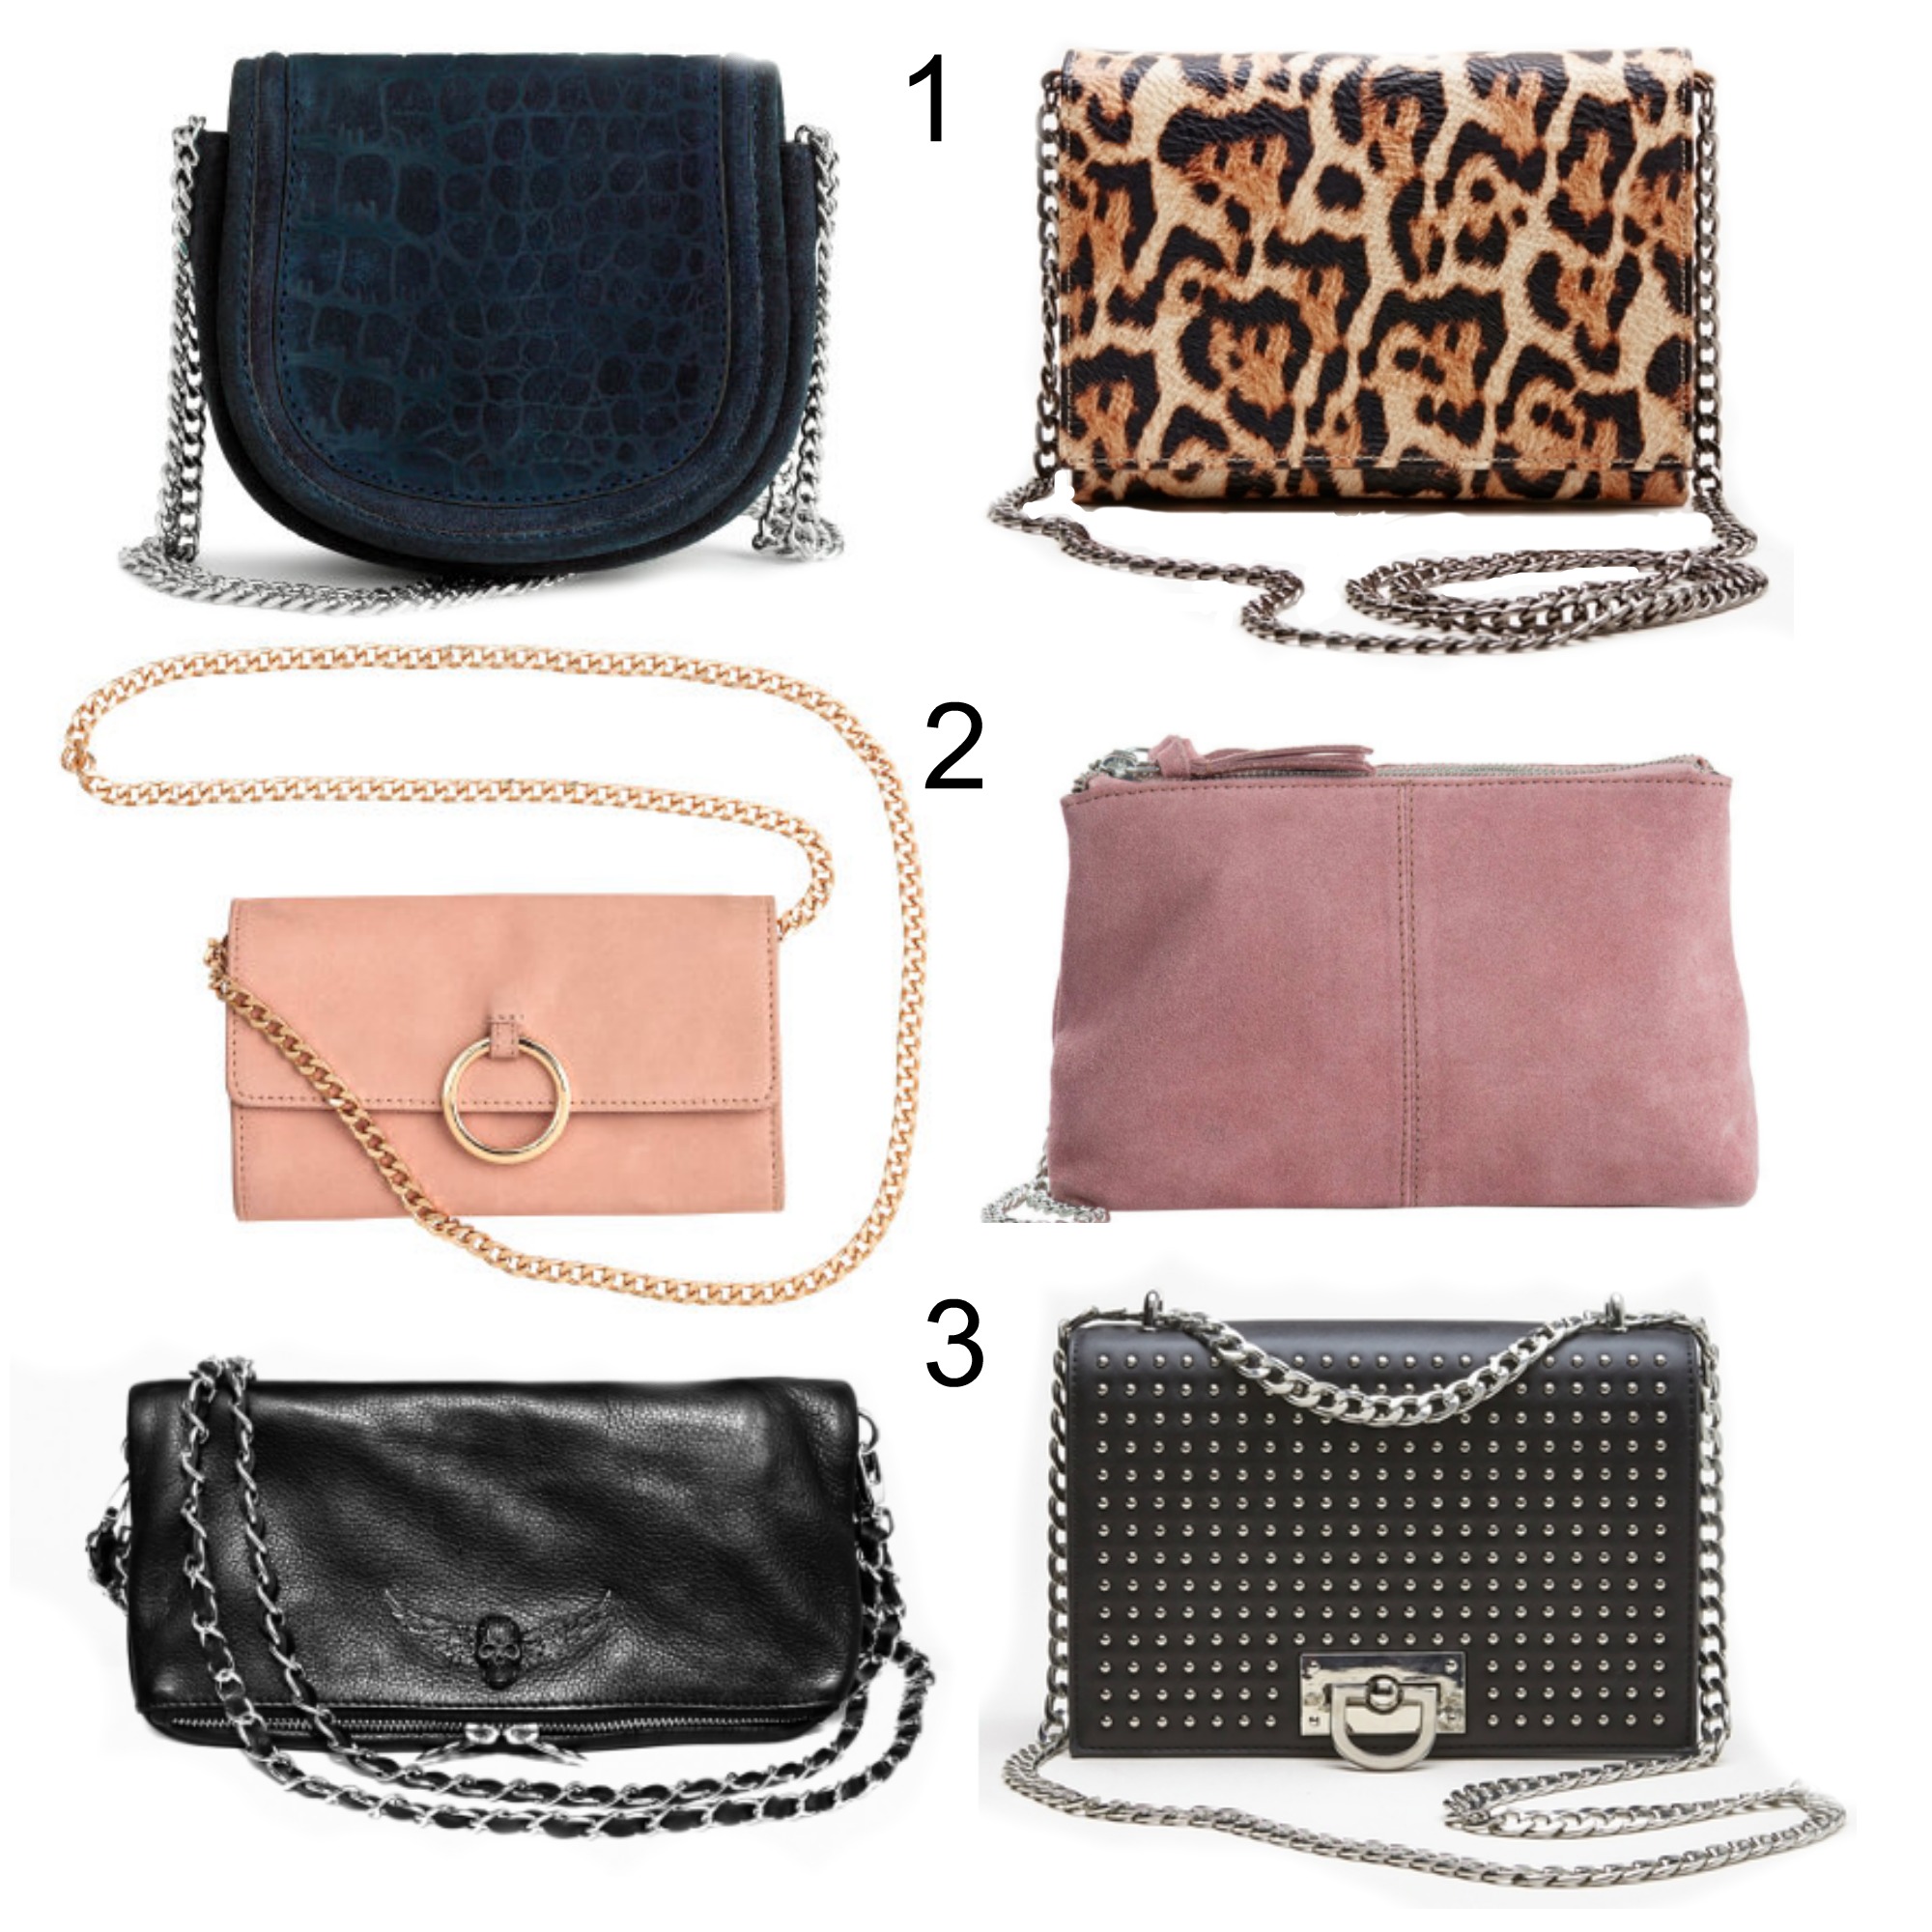 Hvilken taske passer bedst til dig? | Quiz | isabellawpedersen